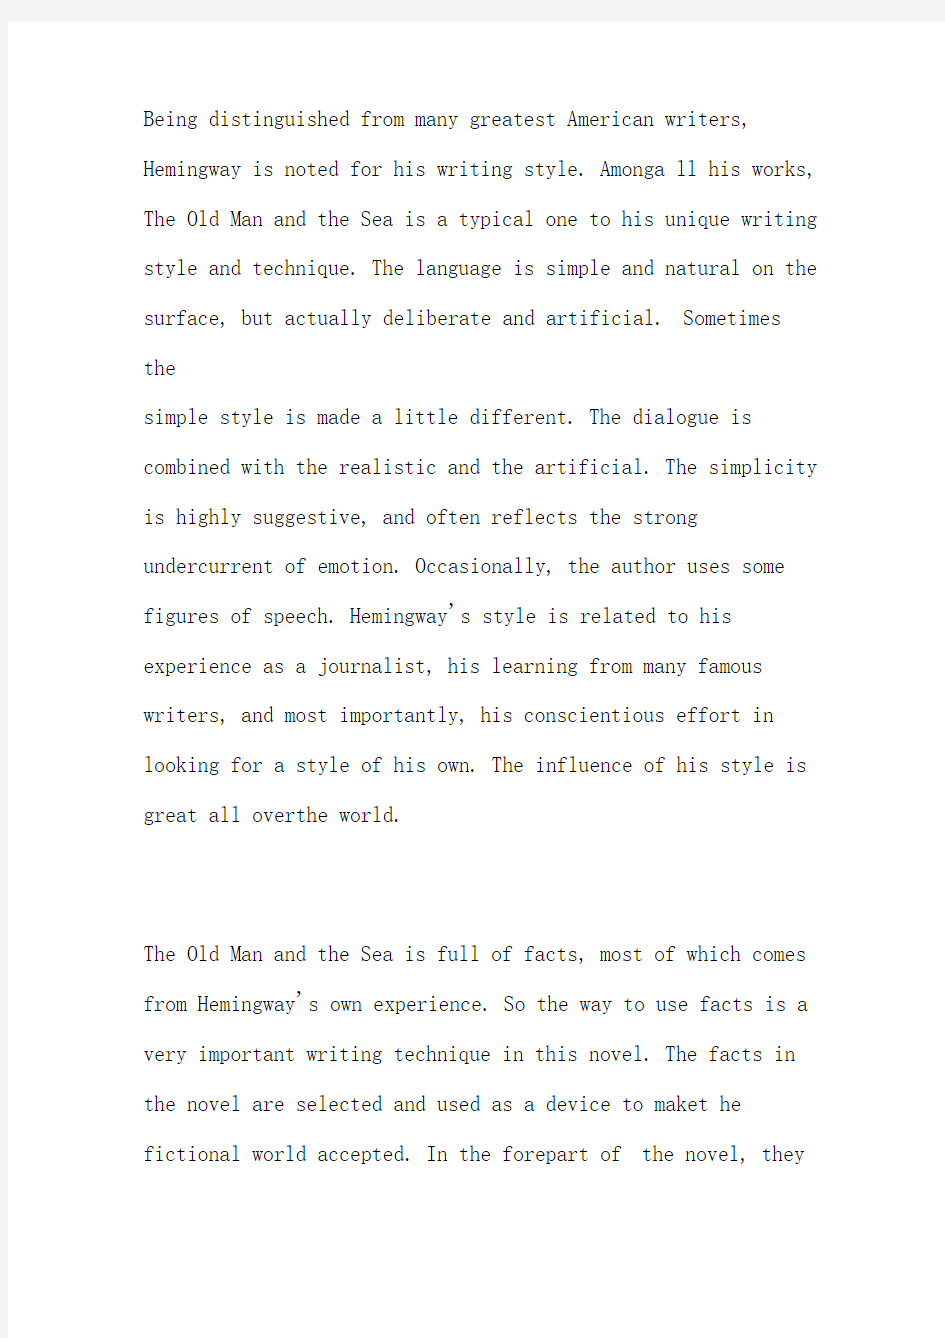 海明威及其《老人与海》的文学批评